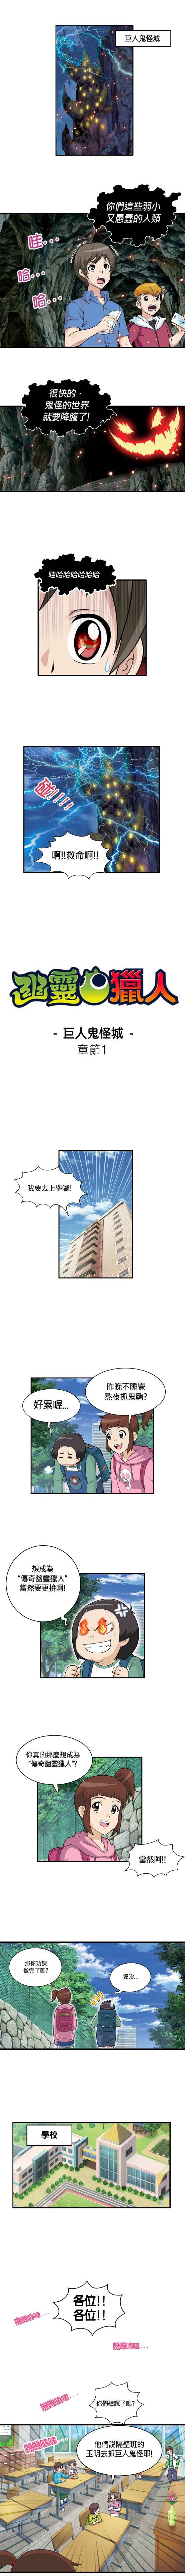 幽靈獵人-神秘公寓: 遊戲介紹 - 網絡卡通 -3 image 6